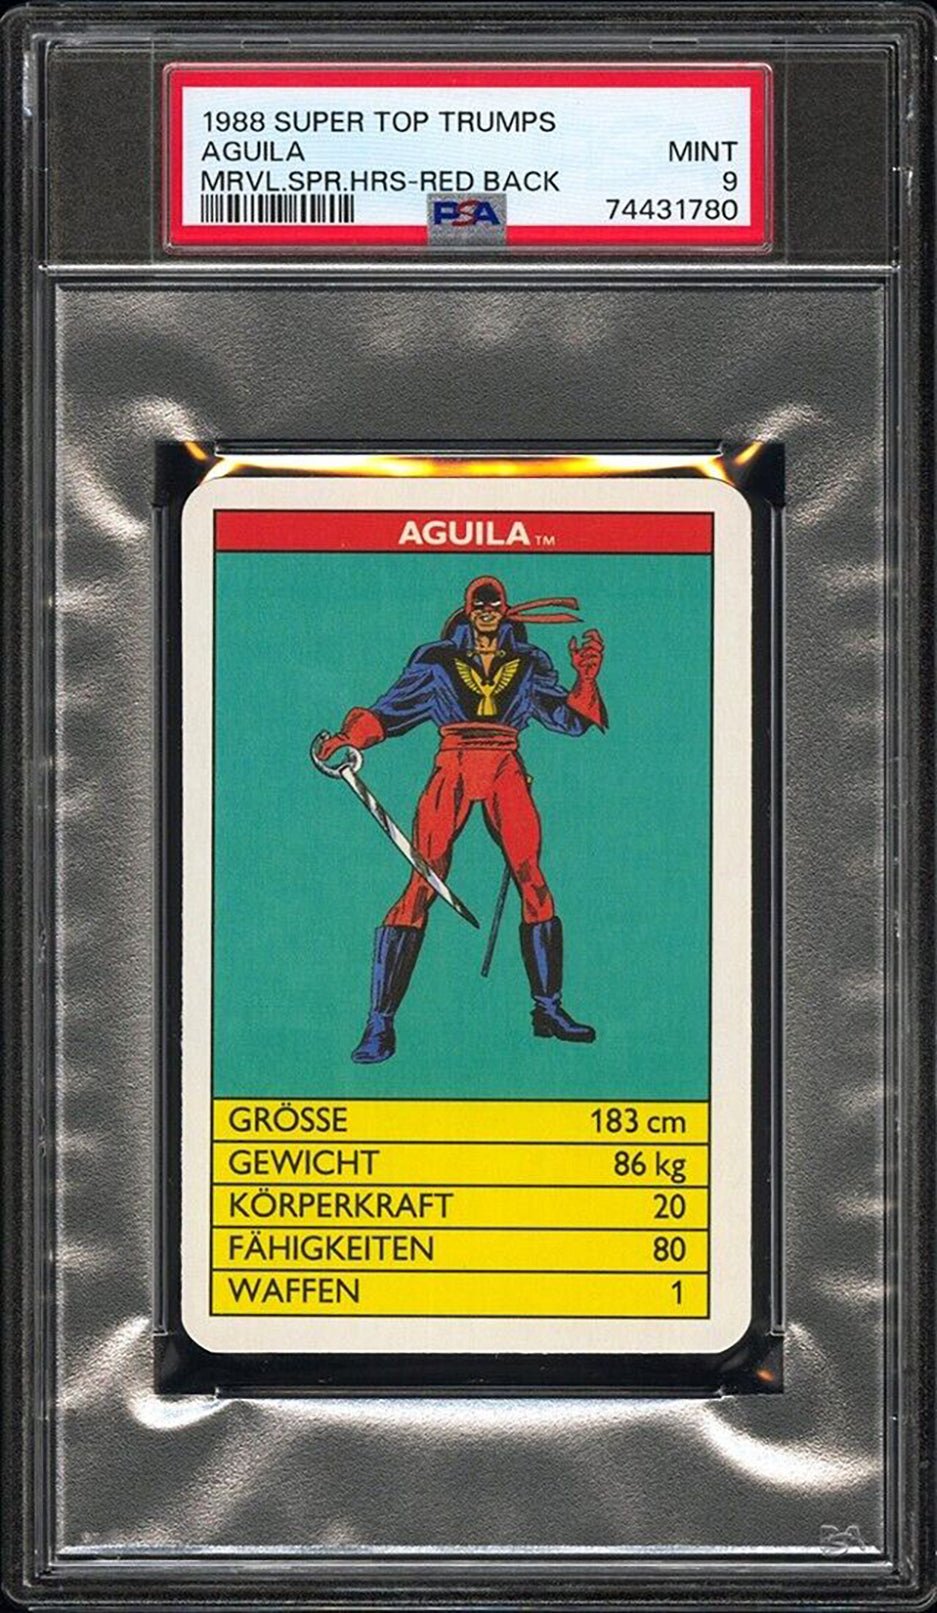 AGUILA PSA 9 1988 Super Top Trumps Marvel Super Heroes Red Back Marvel Base Graded Cards - Hobby Gems